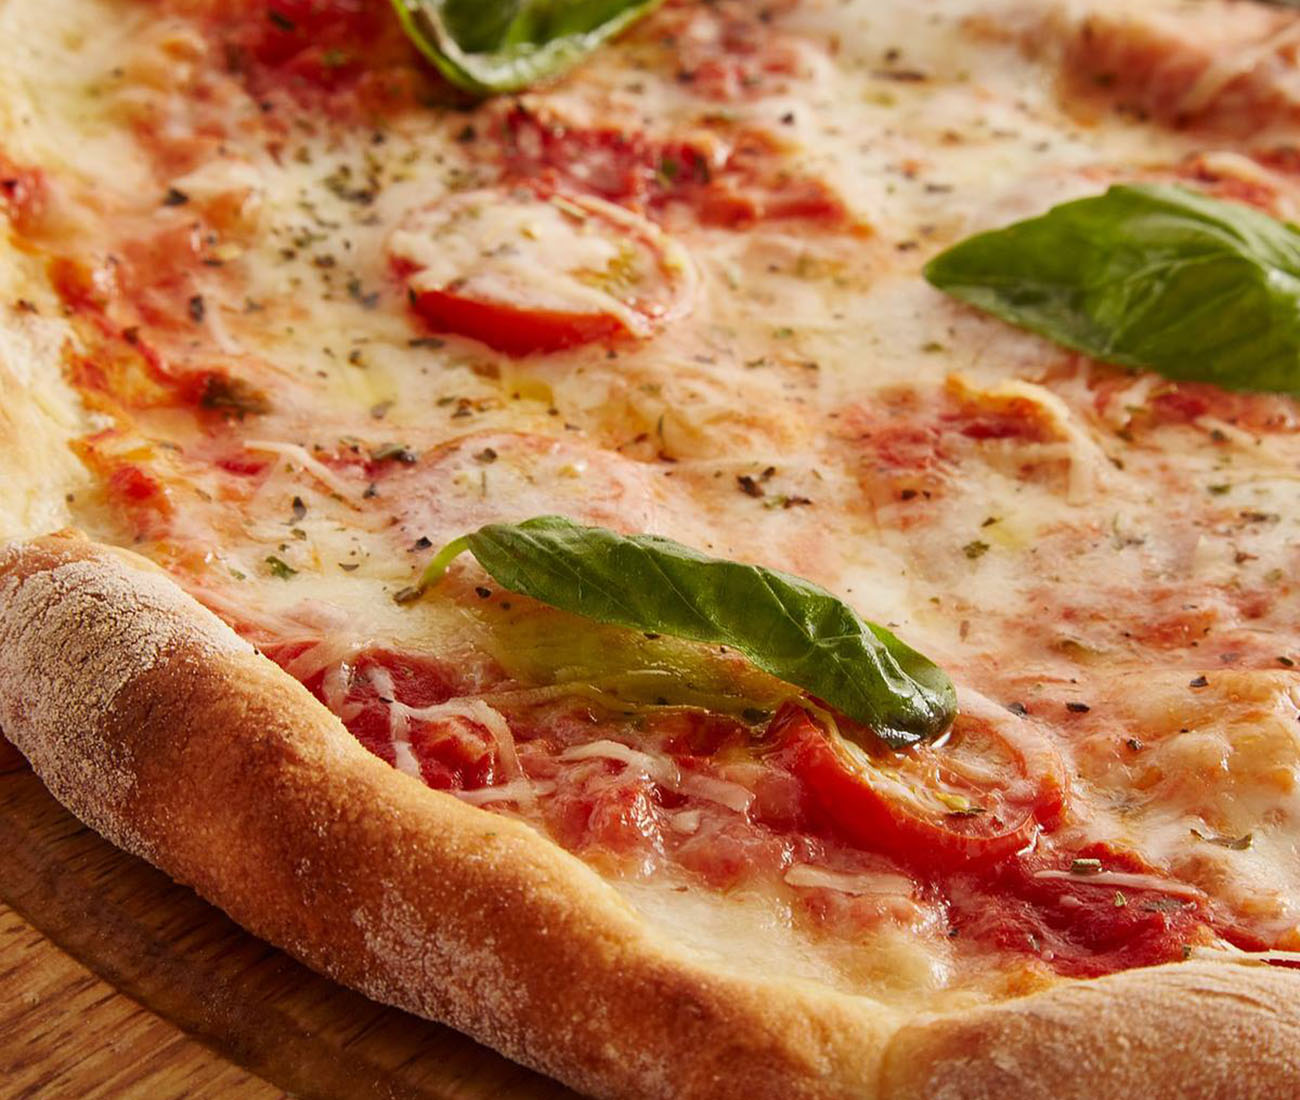 pizza-buona-come-in-pizzeria,-il-trucco-della-padella-per-la-cottura-nel-forno-di-casa-in-5-minuti.-croccante-e-golosa